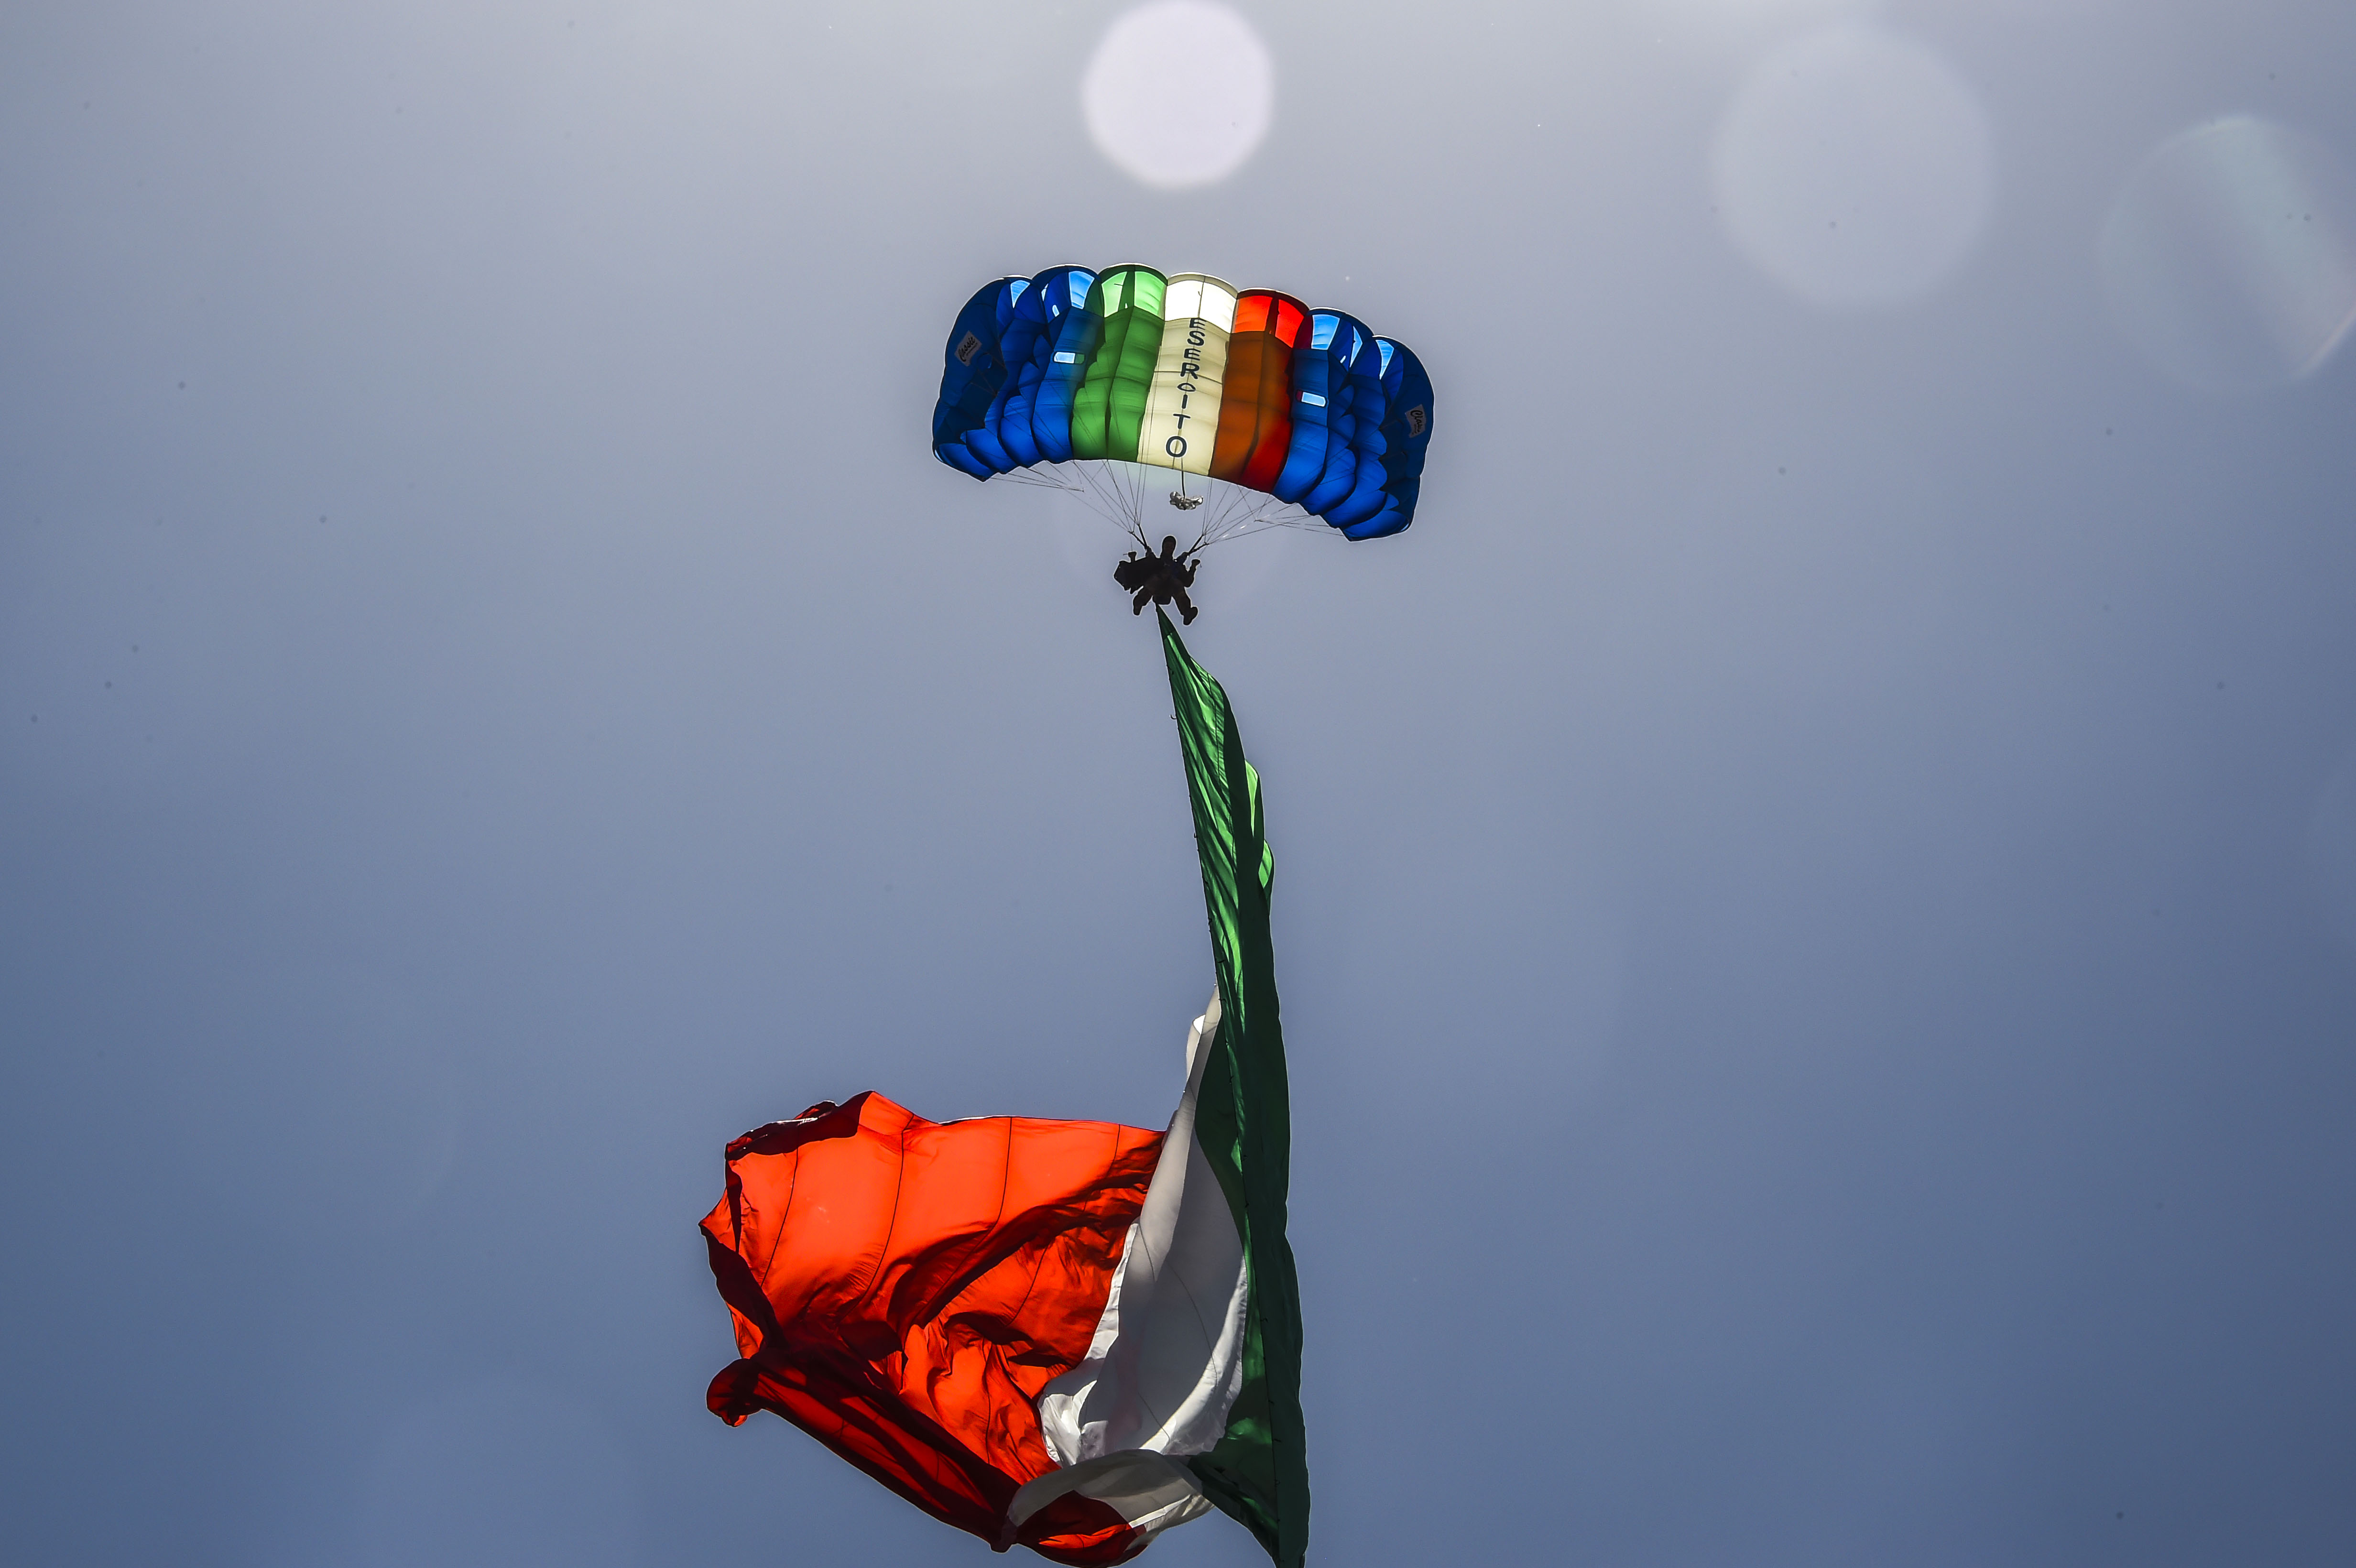 Ιταλία, υπάρχει κίνδυνος οικονομικής κρίσης;  Θα εξαρτηθεί από την αξιοπιστία της χώρας μετά τις εκλογές